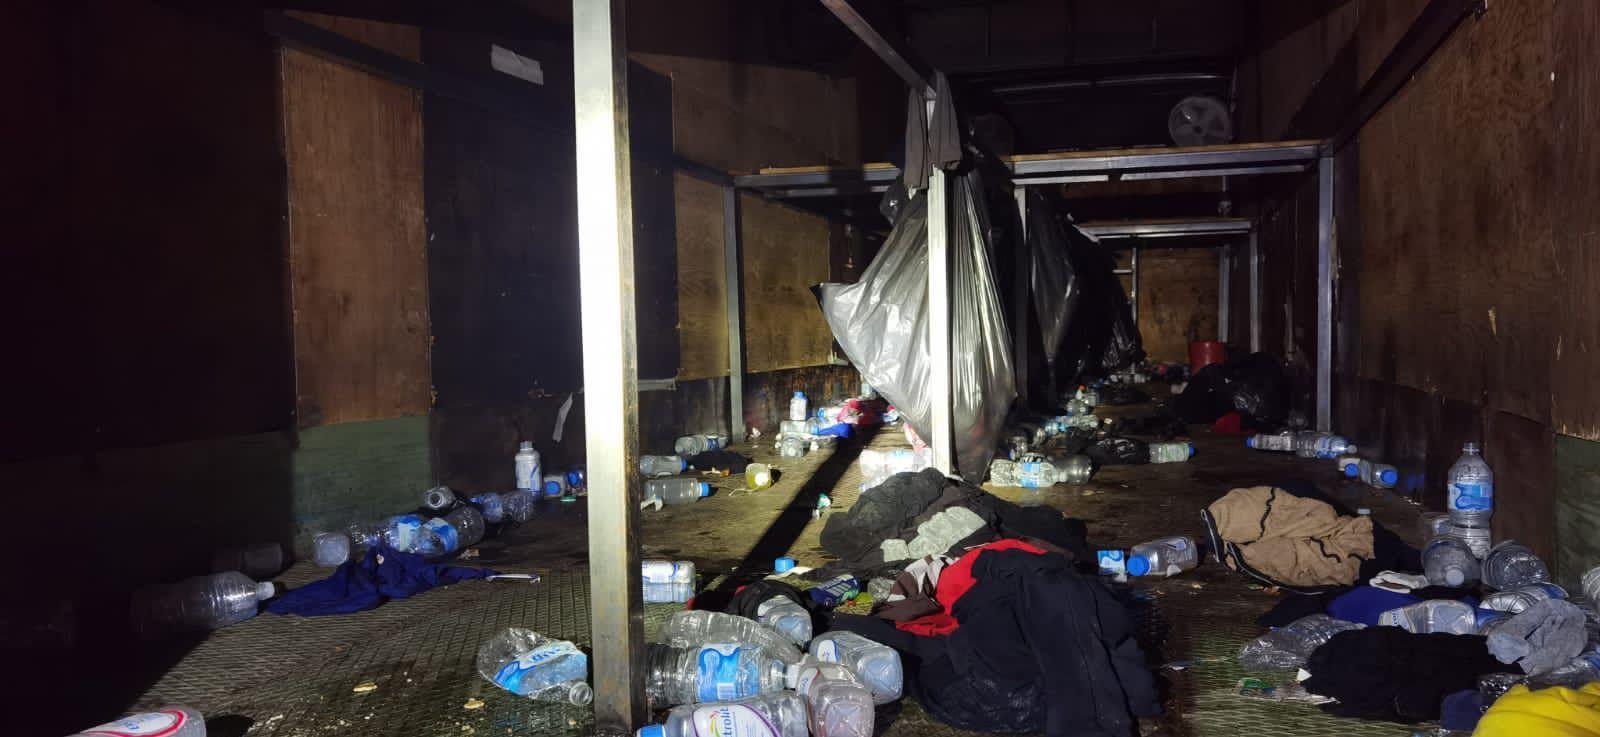 Casi se asfixian: abandonan a 200 migrantes en caja de tráiler, en Veracruz